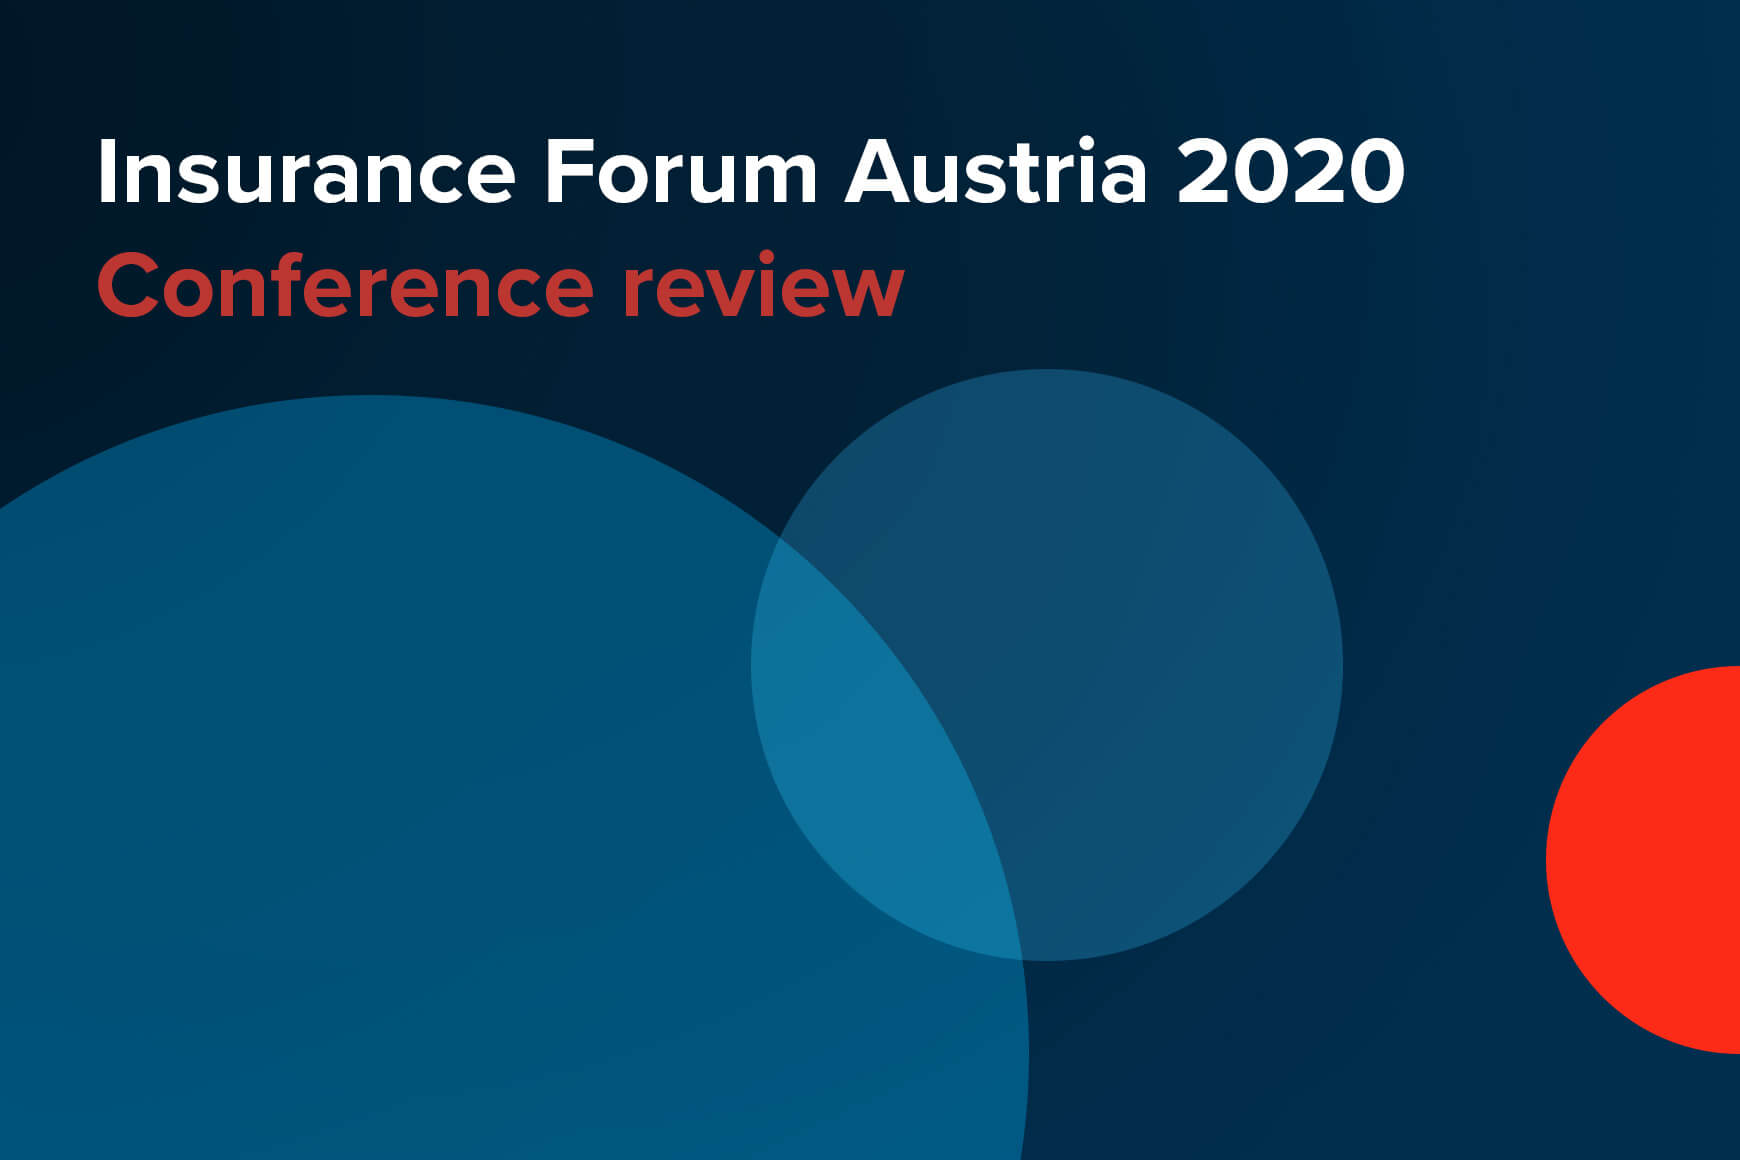 profinit conference review insurance forum austria 2020 web 1